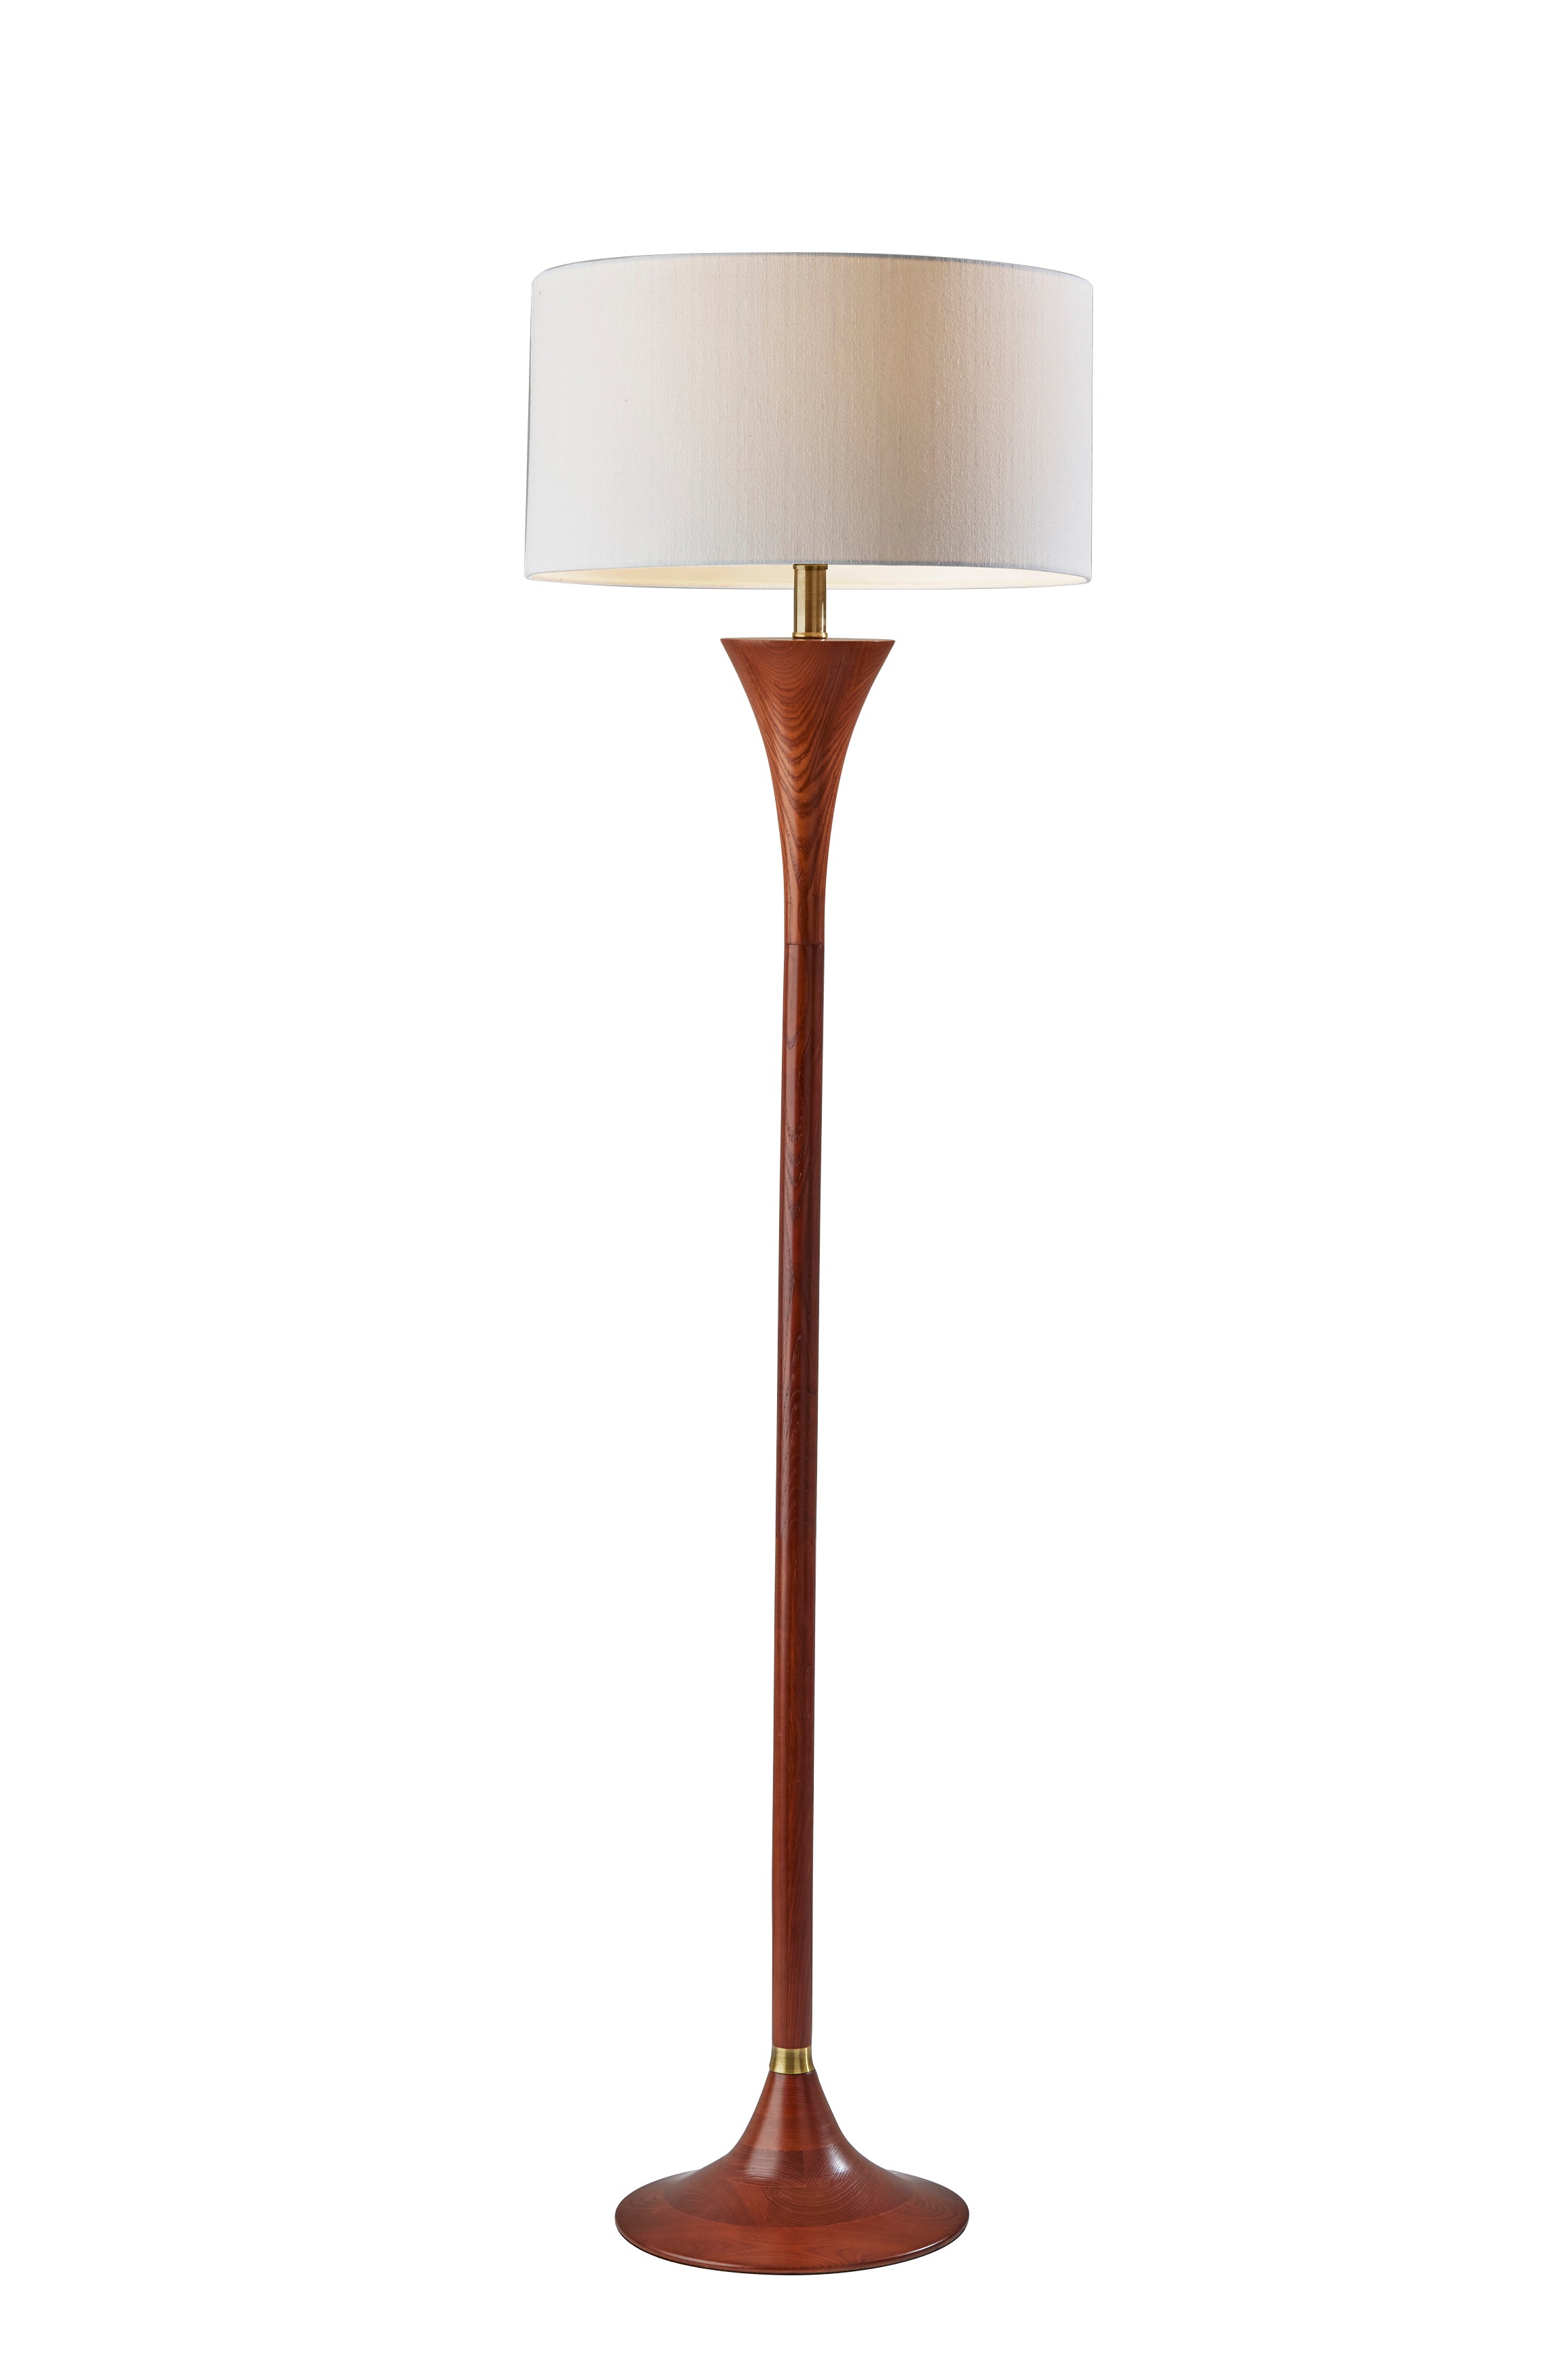 REBECCA Lampe sur pied Bois, Or - 1601-15 | ADESSO